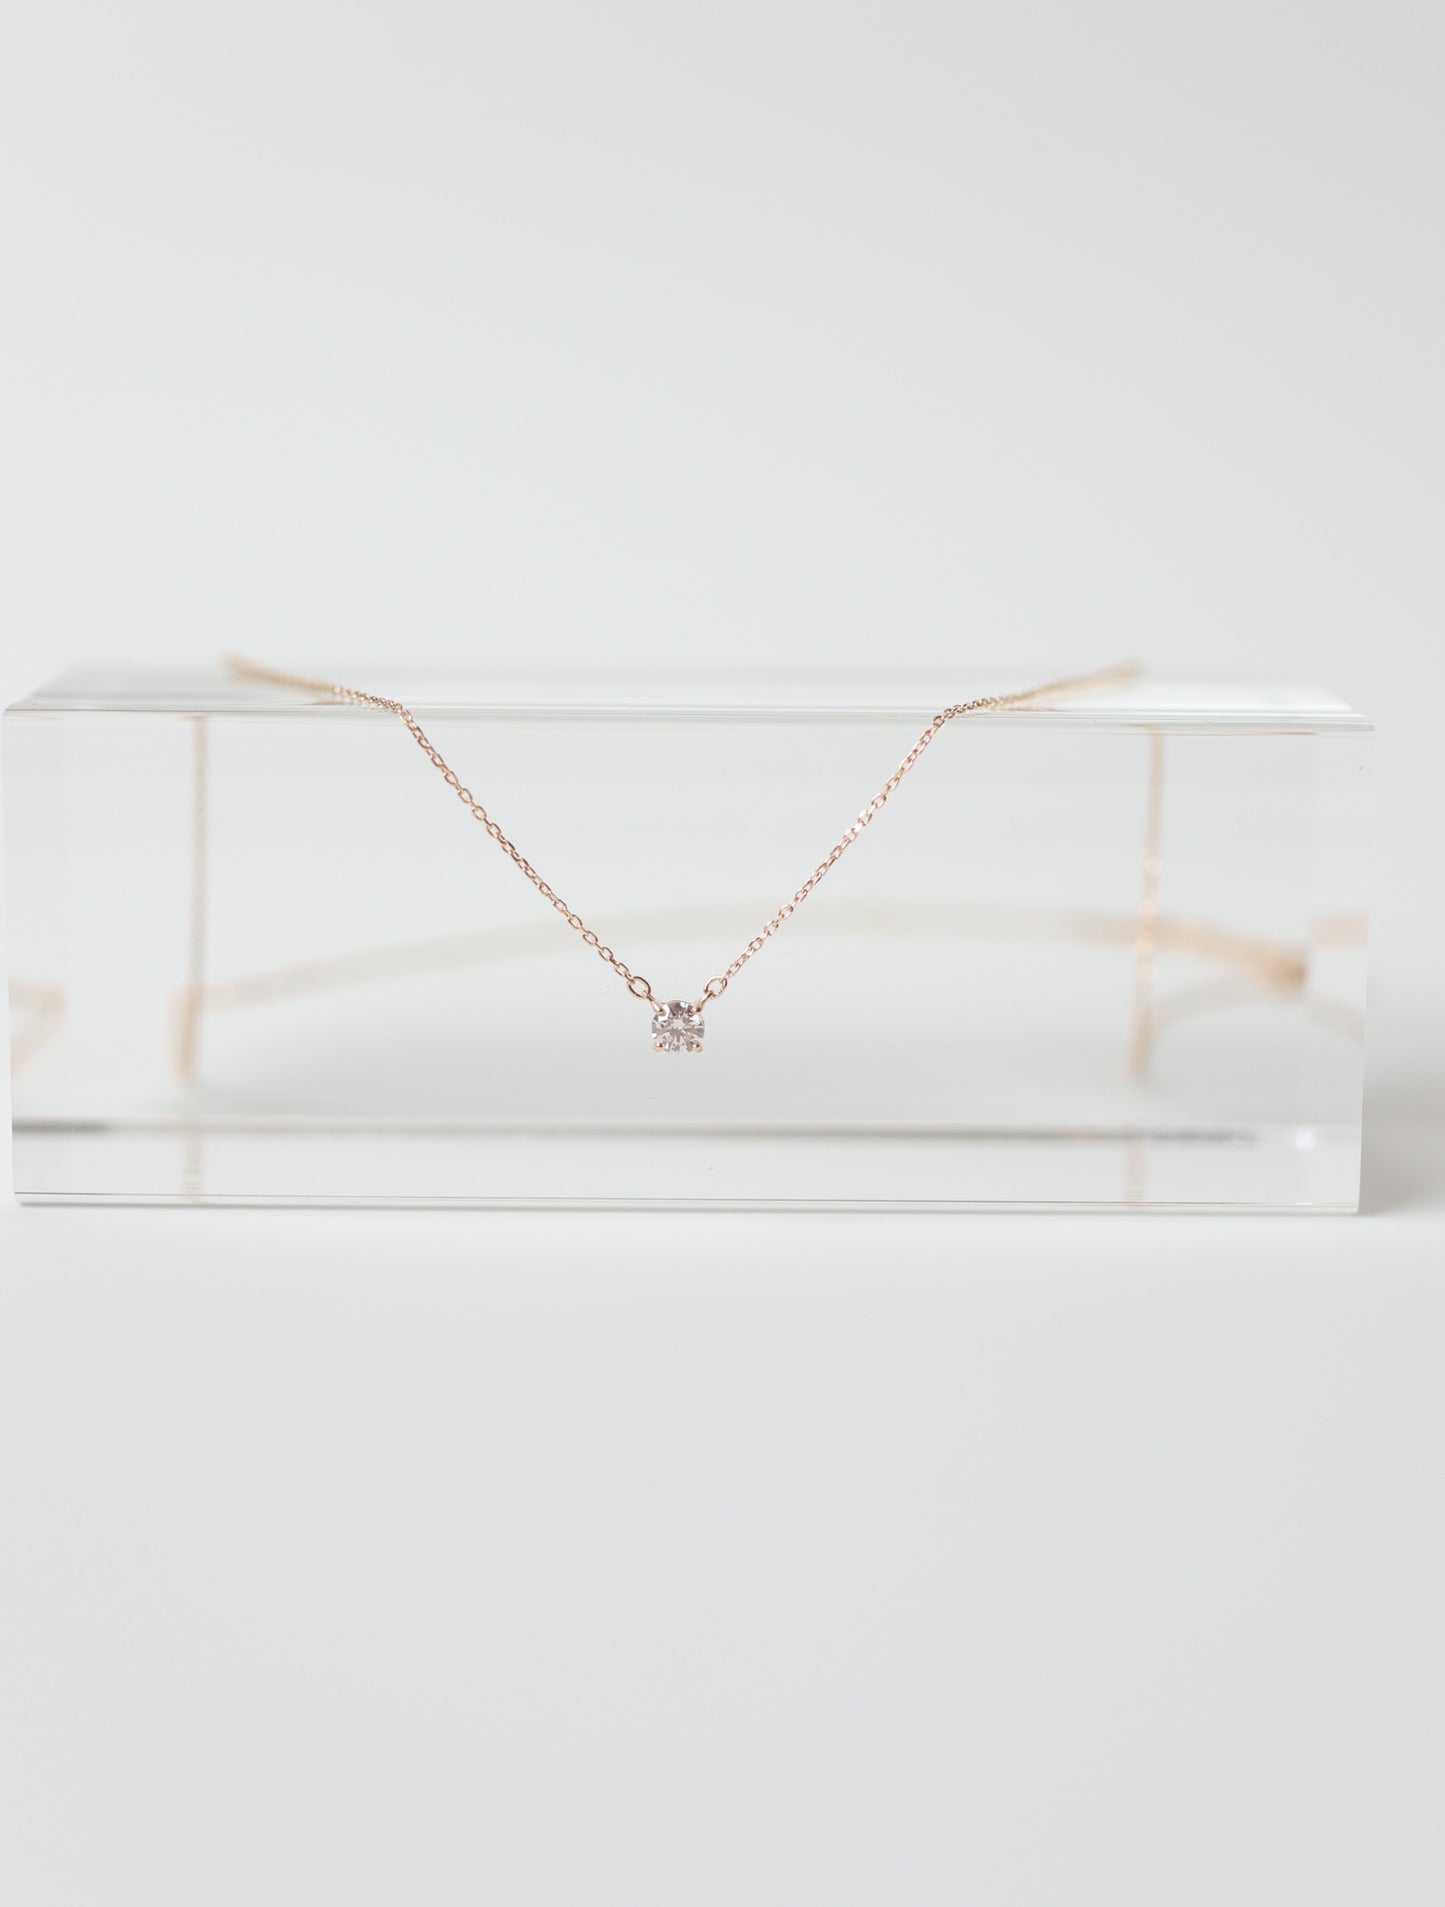 日本製 18K金minimal diamond necklace 鑽石頸鏈